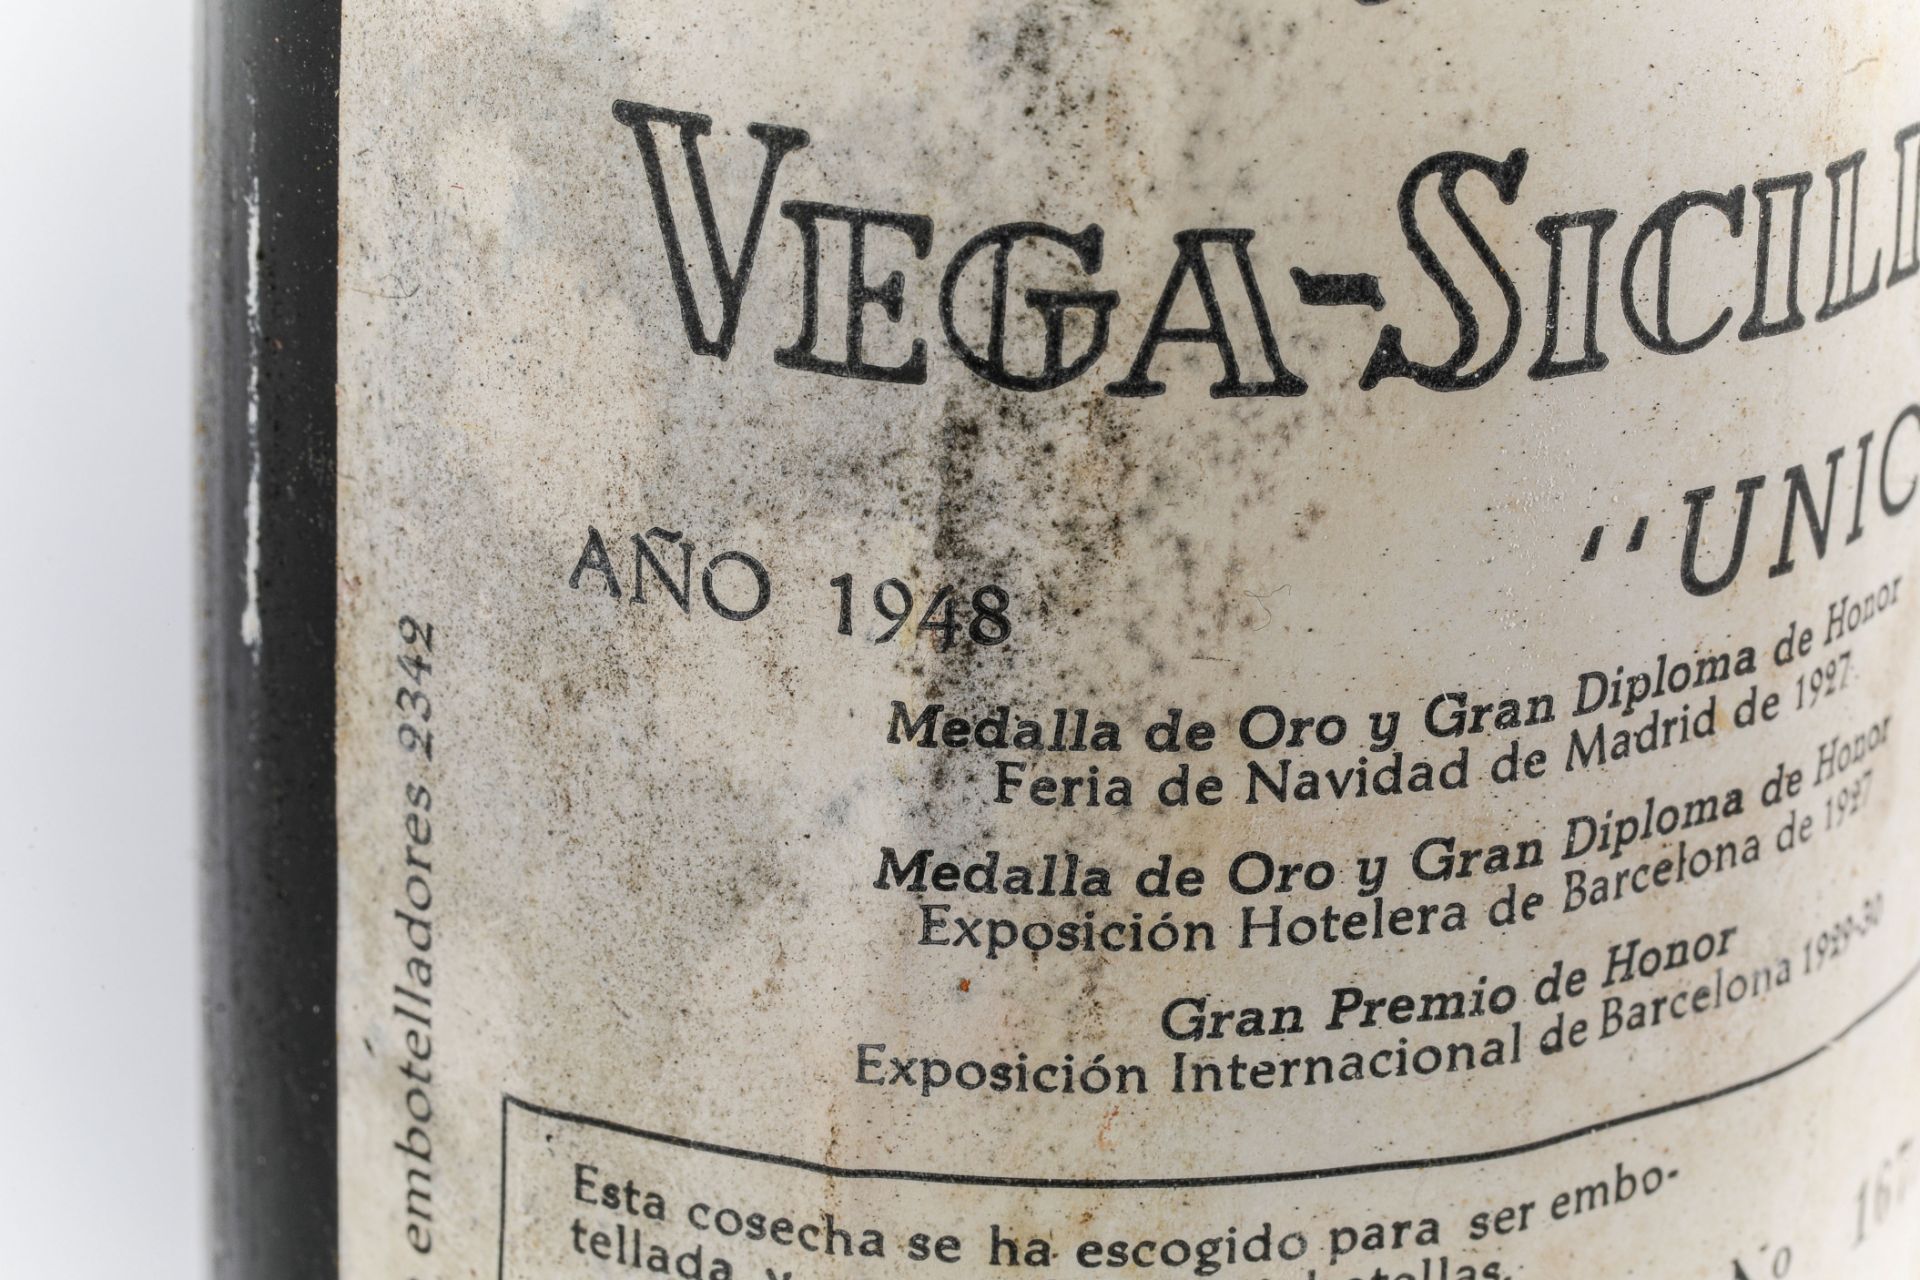 VEGA SICILIA UNICO.1948. Ribera del Duero. Bouteille N°16711 sur production de 17360 bouteilles. - Image 3 of 4